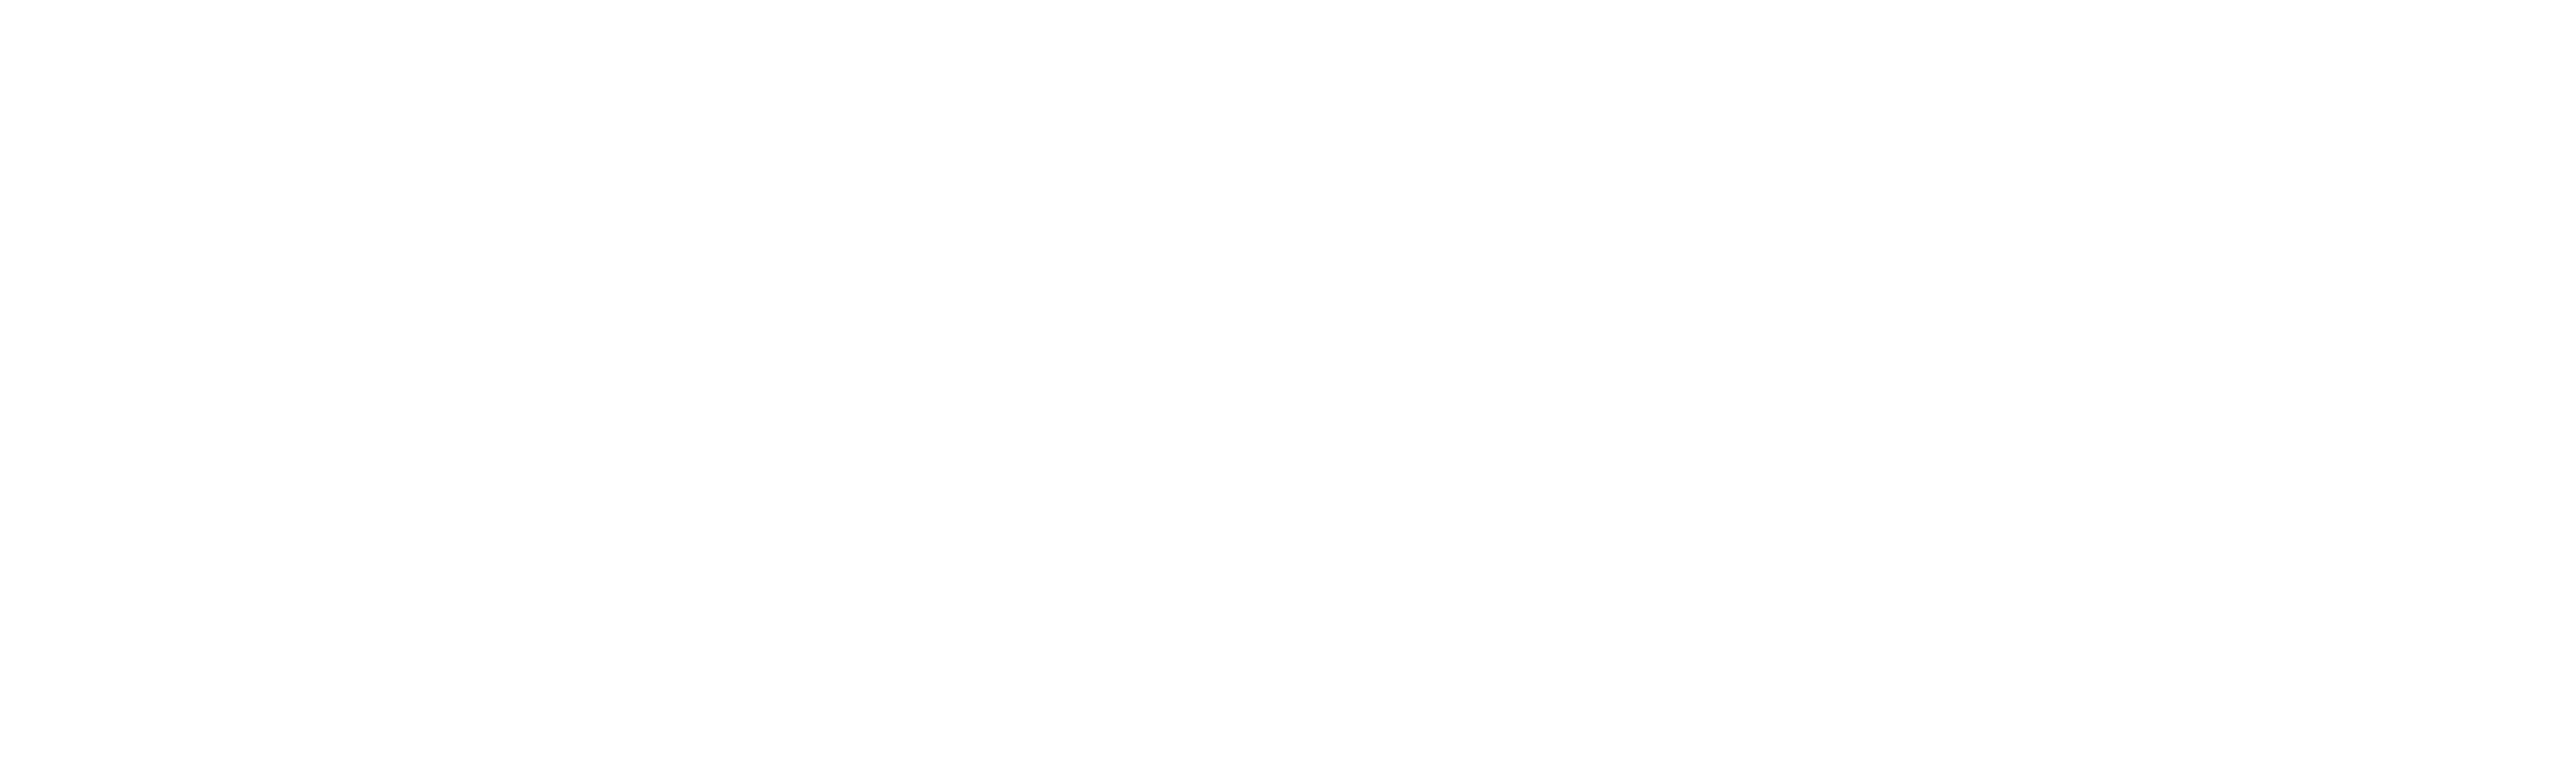 Infos Musicien·ne·s